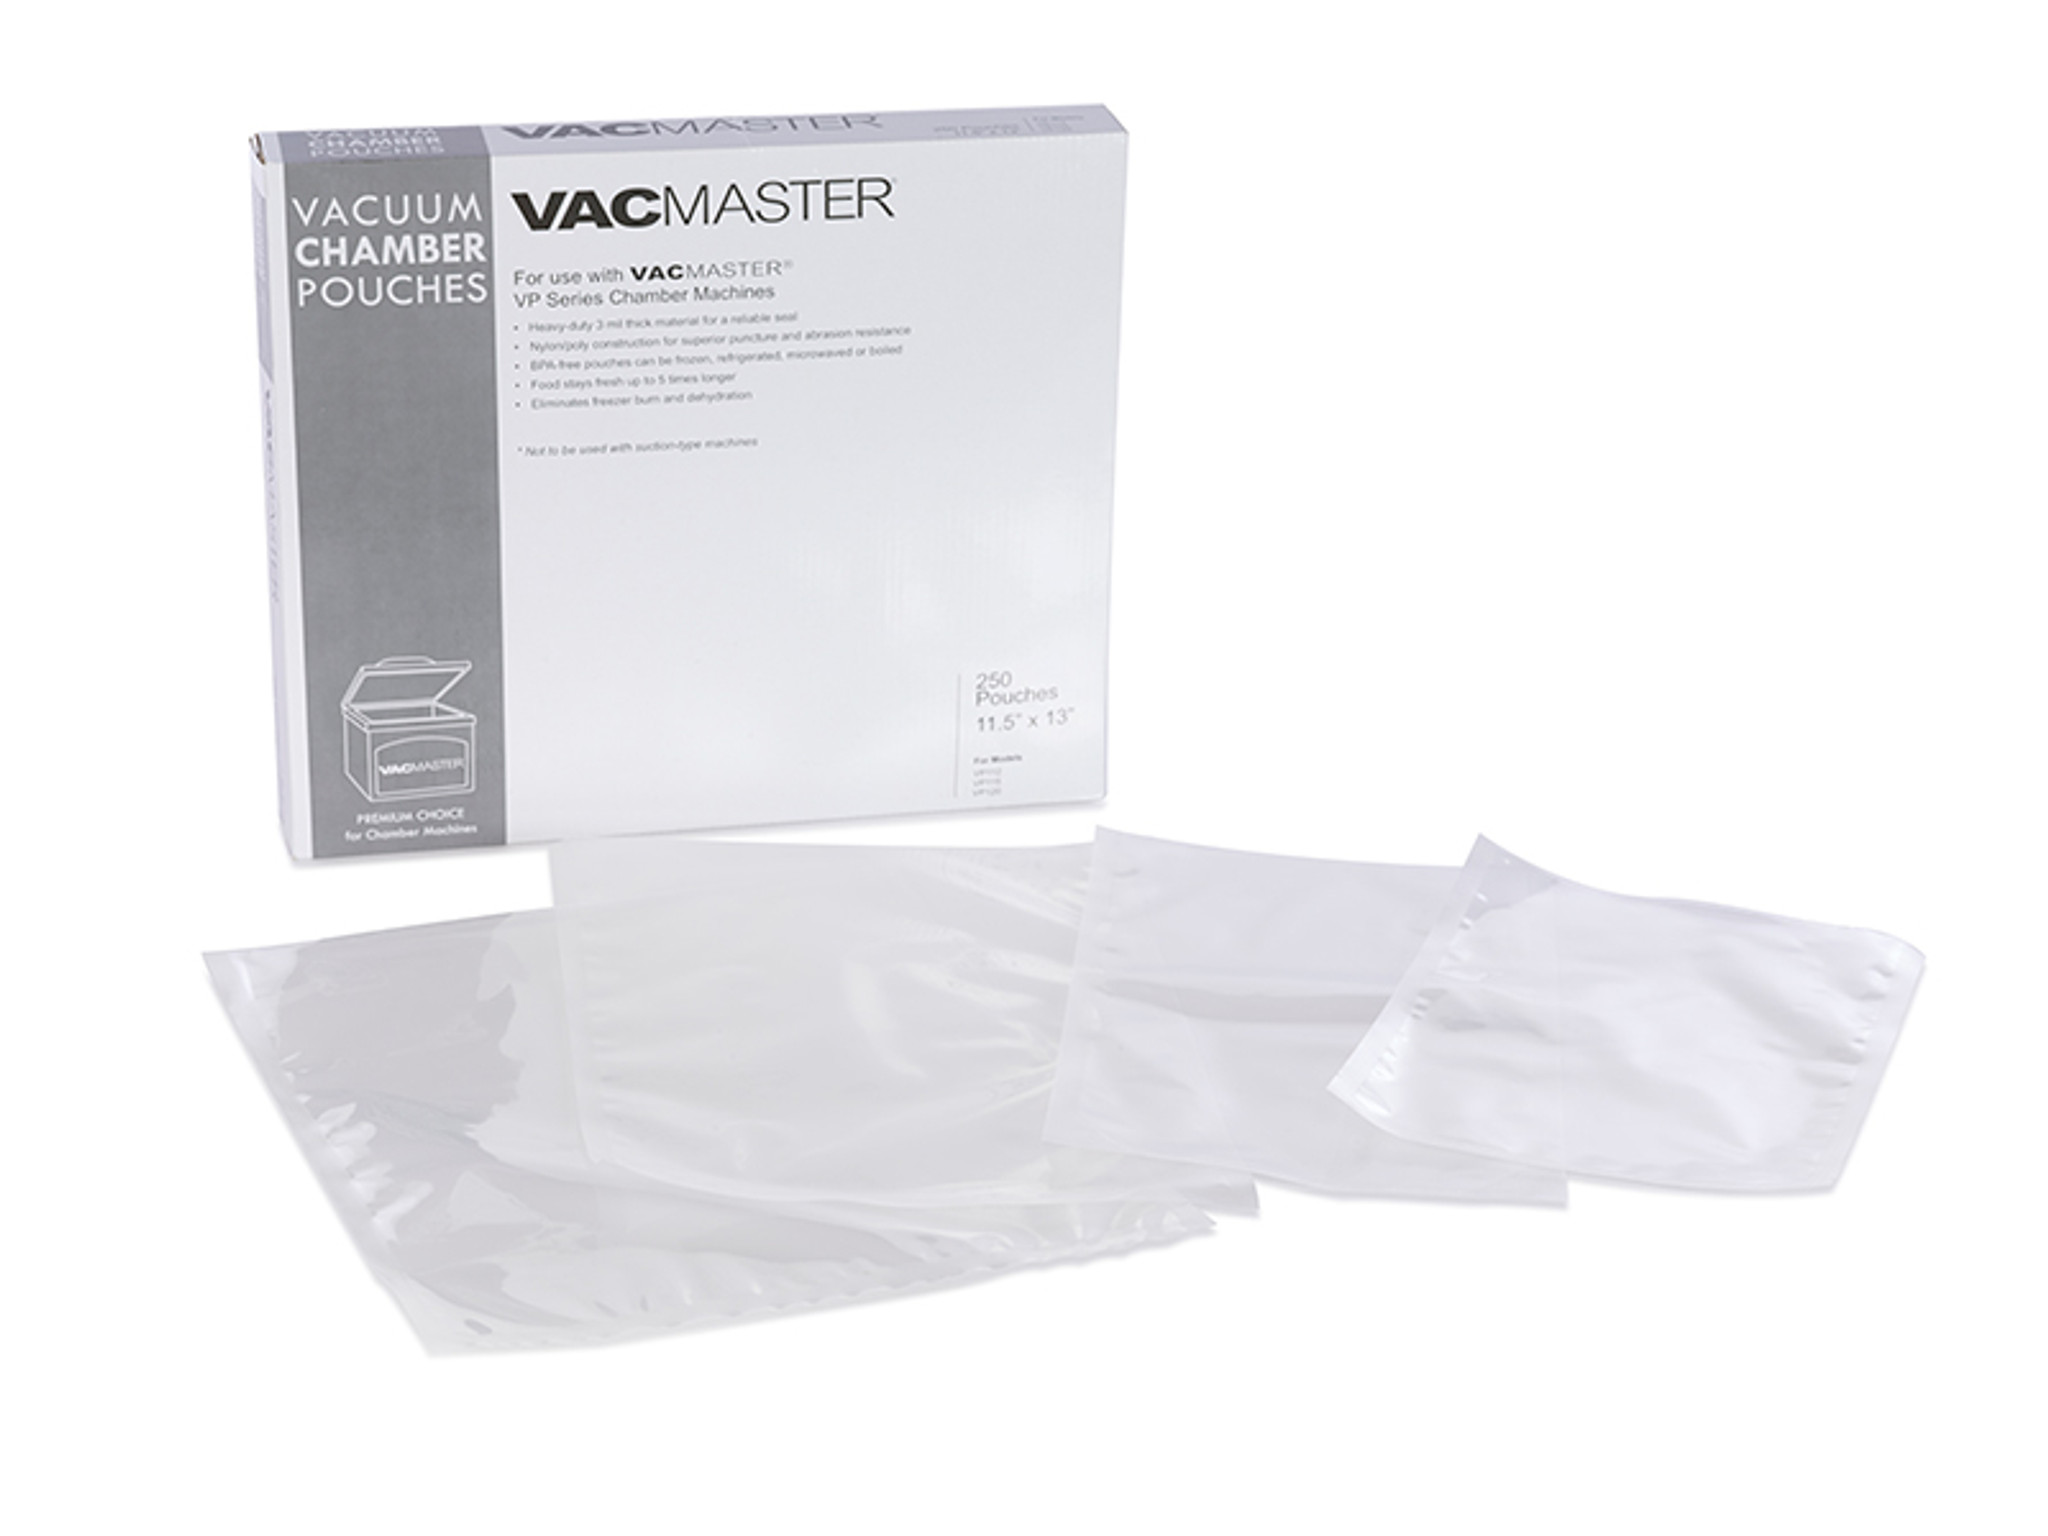 Fresh Hero Clear Plastic Vacuum Packaging Bag - for Chamber Vacuum Sealer,  3 mil, BPA-Free - 6 x 8 - 1000 count box